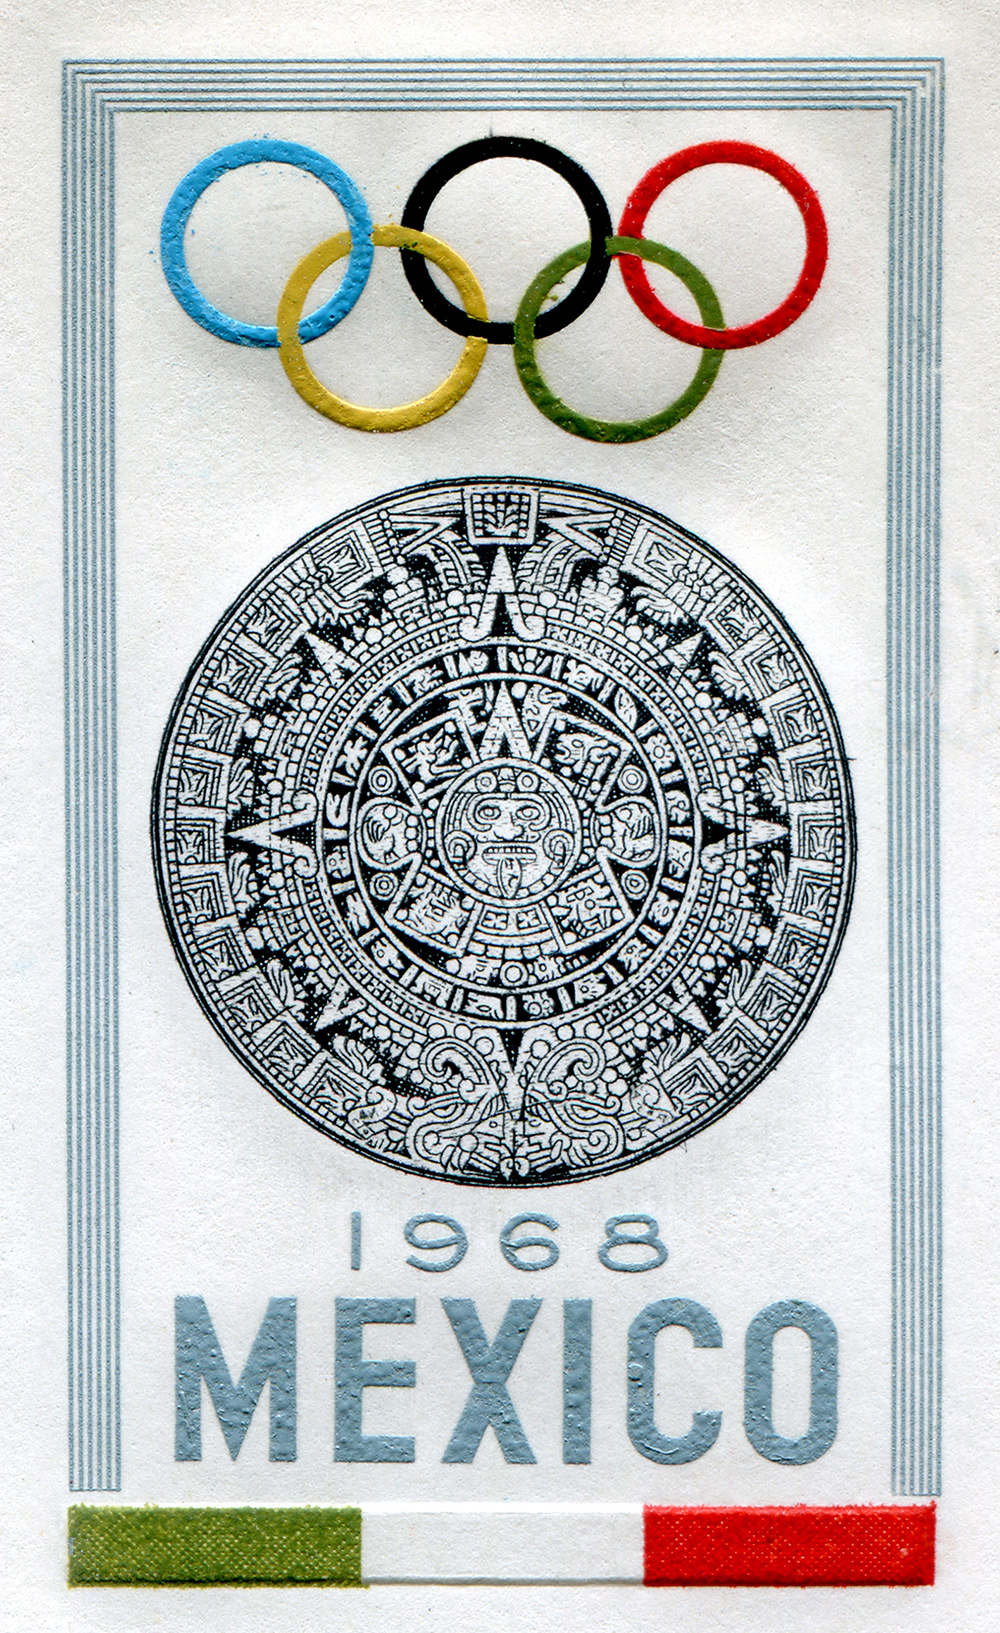 Emblema oficial registrado ante el Comité Olímpico Internacional en 1964.